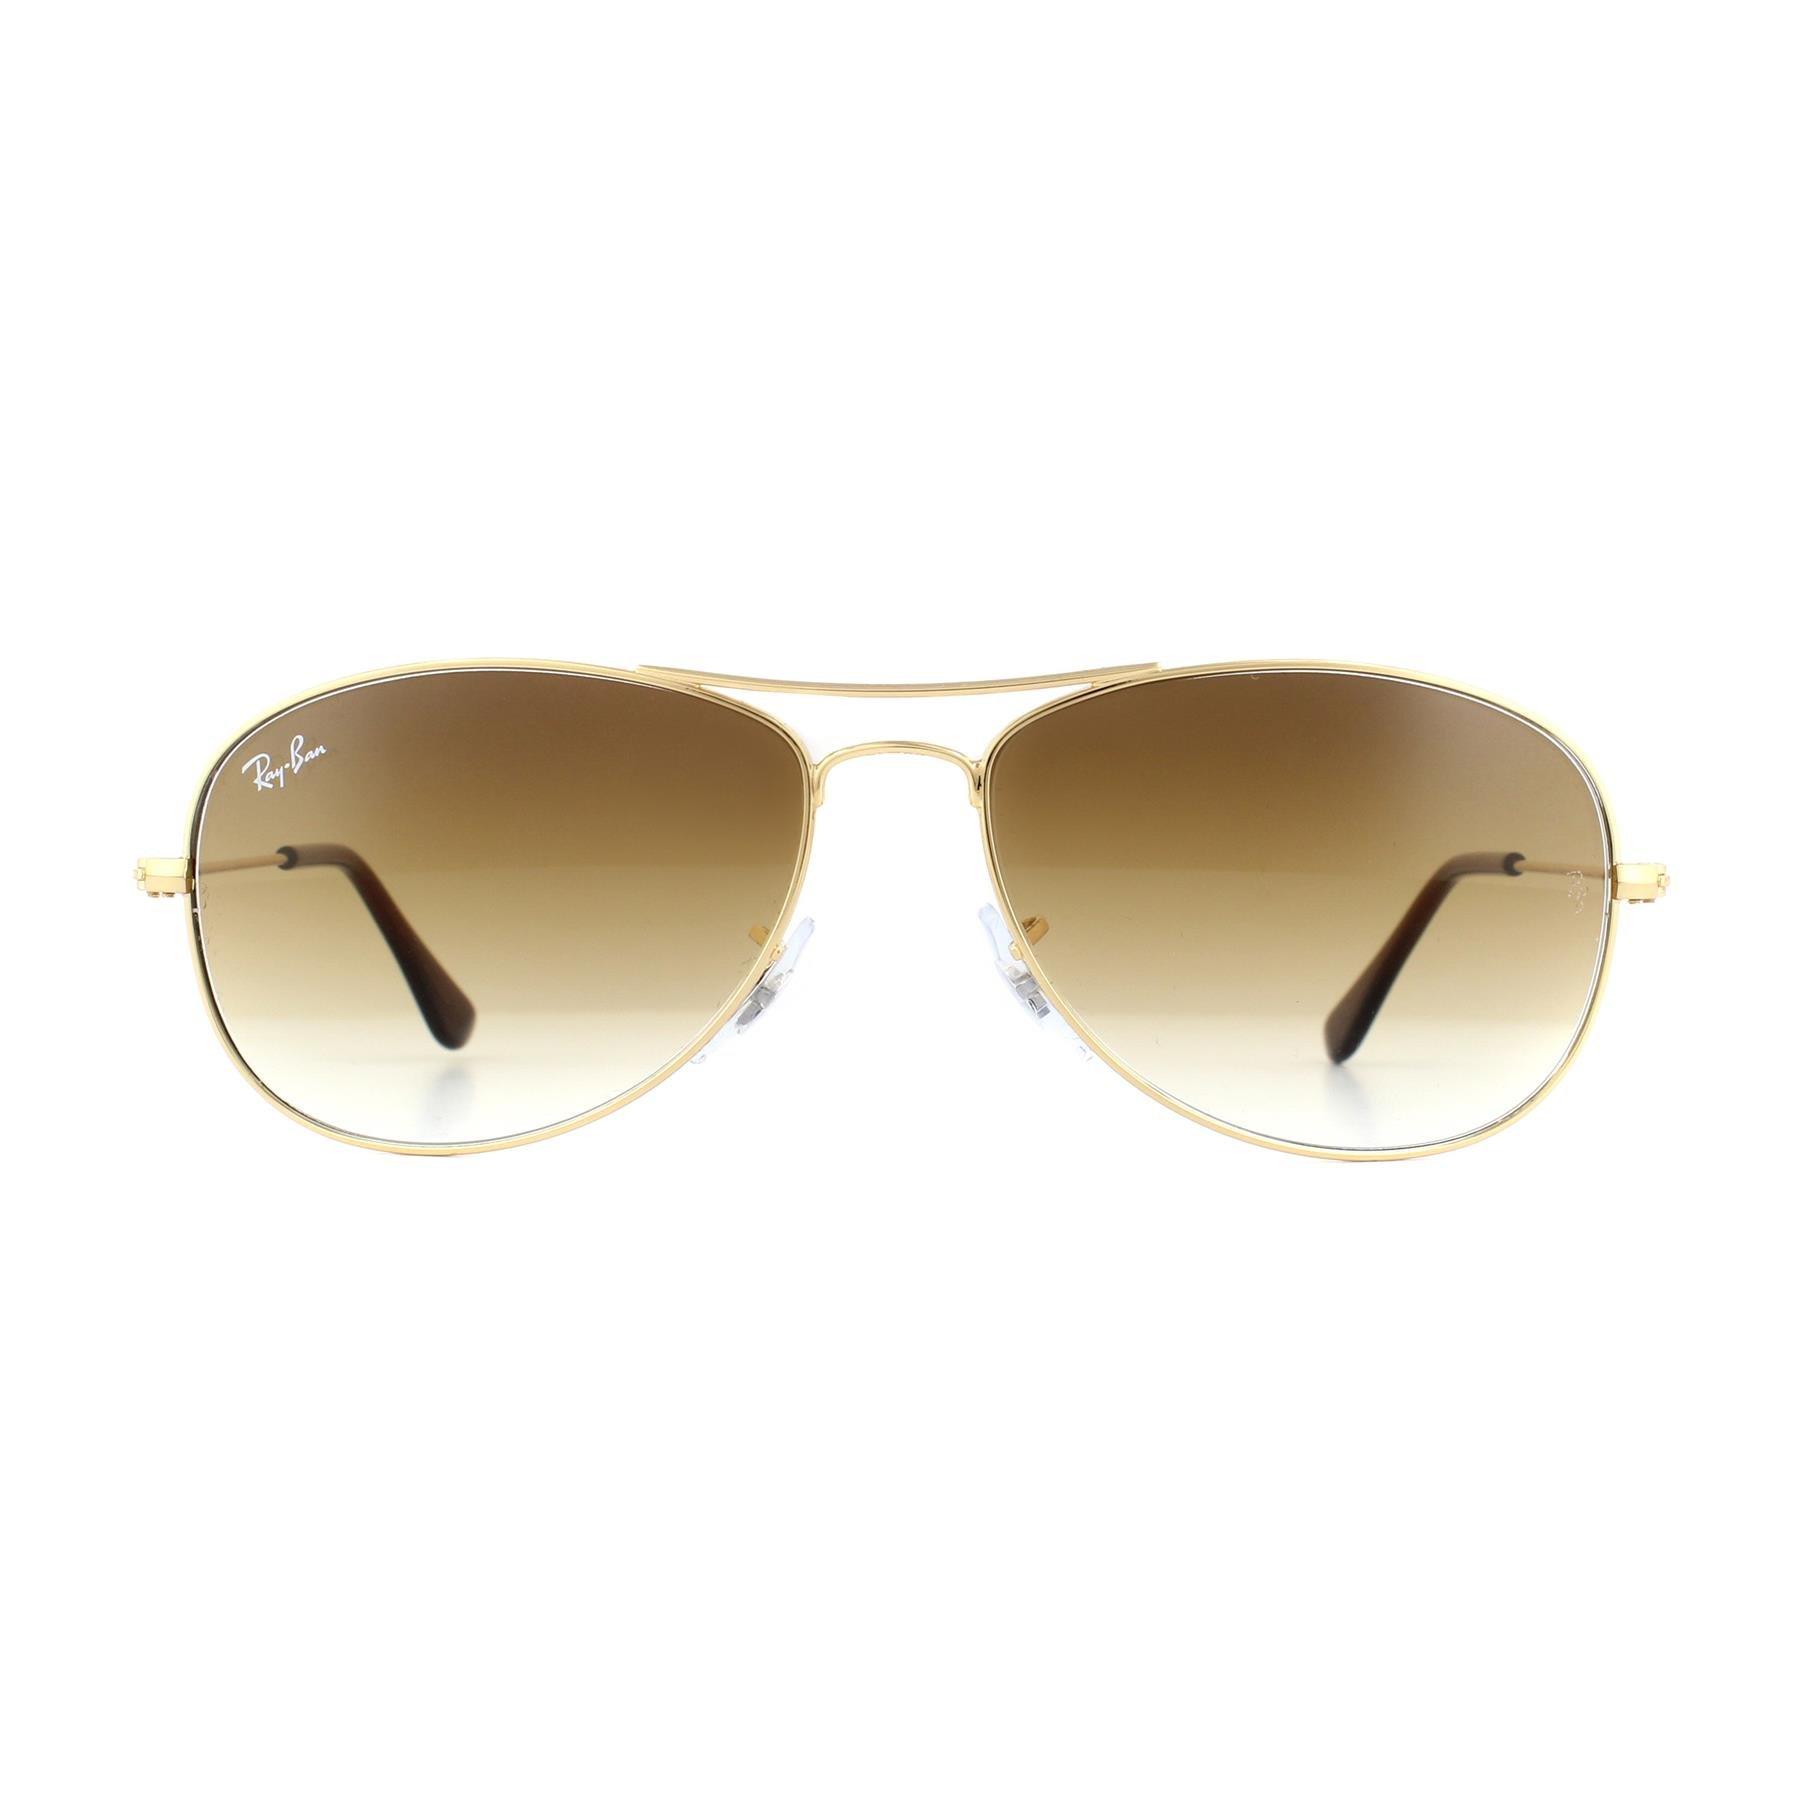 Золотисто-коричневые солнцезащитные очки-авиаторы с градиентом Ray-Ban, золото